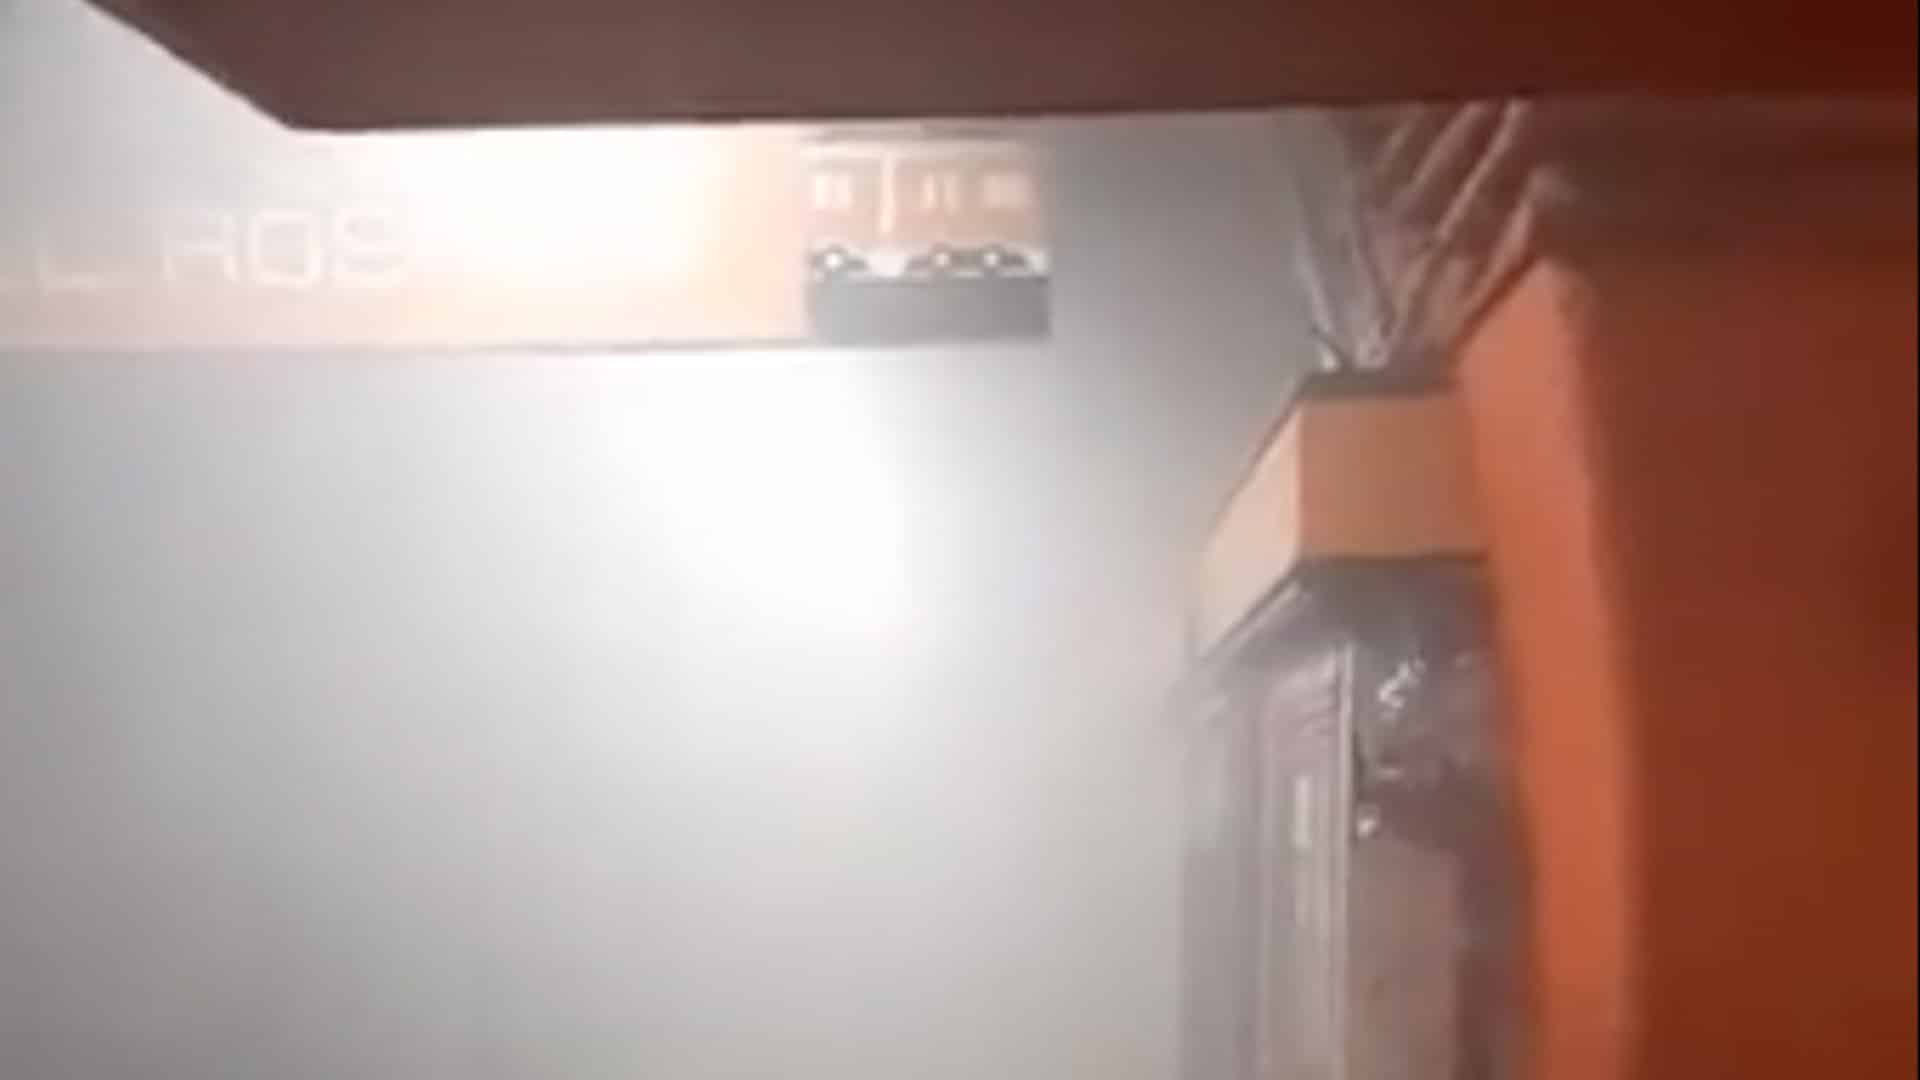 Desalojan estación Barranca del Muerto del Metro de la CDMX